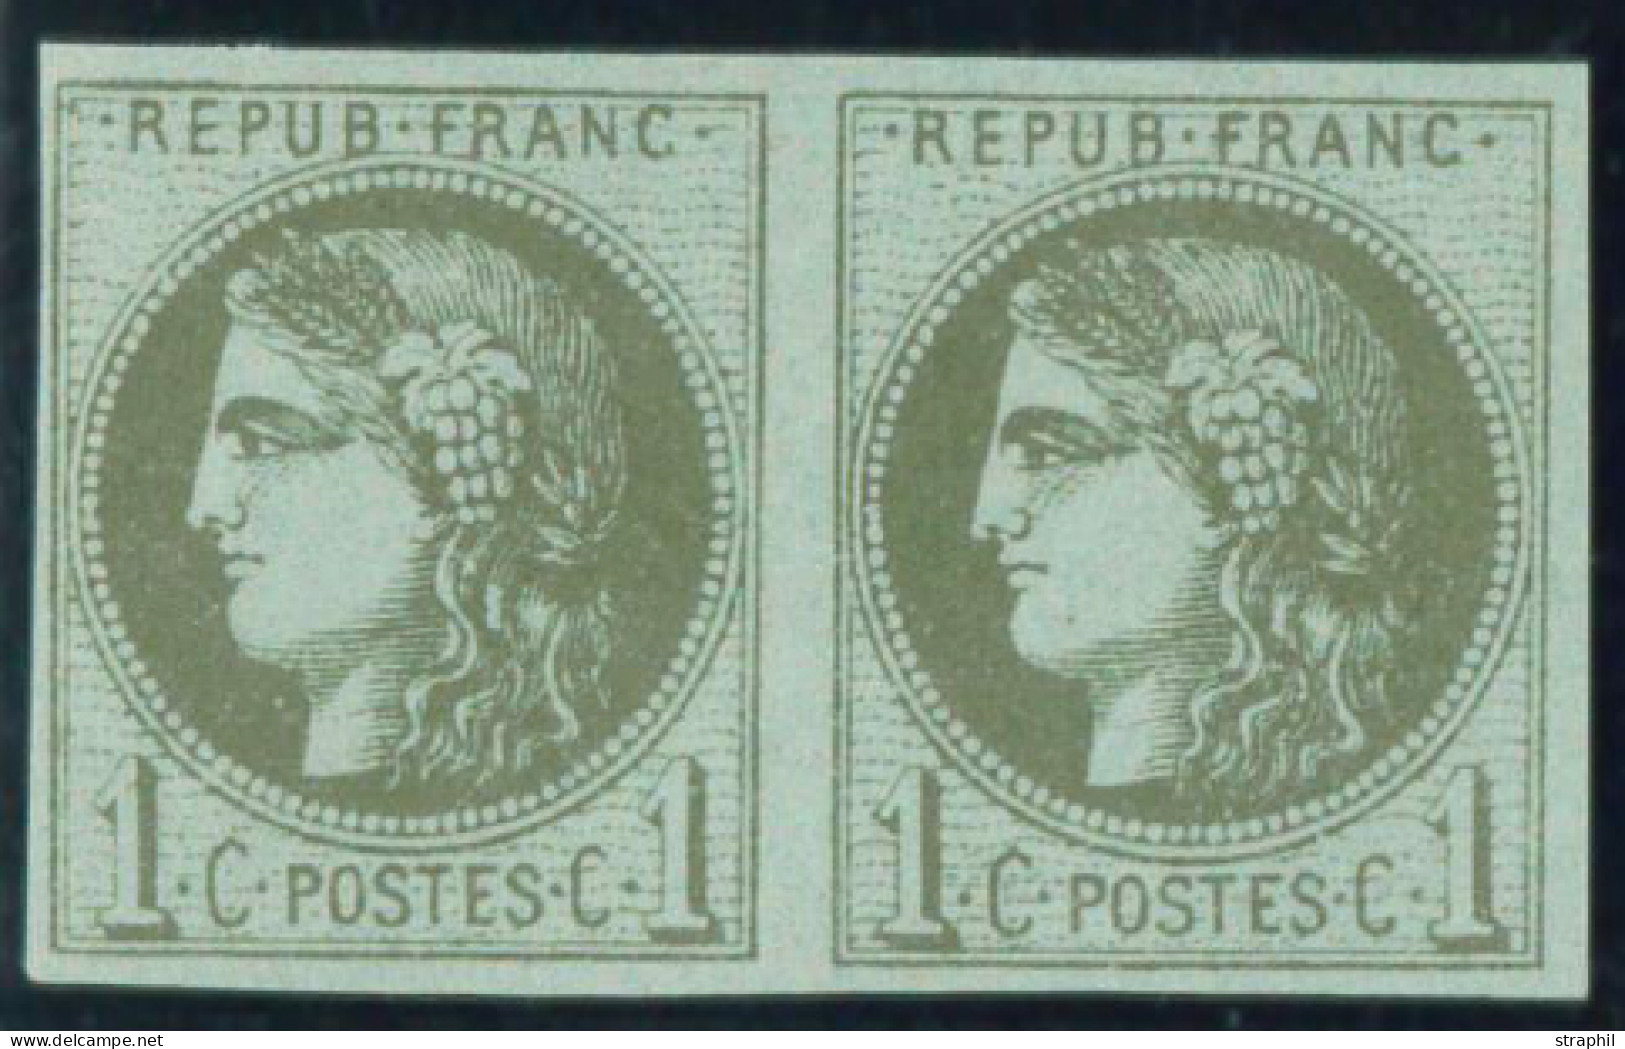 ** EMISSION DE BORDEAUX - 1870 Ausgabe Bordeaux